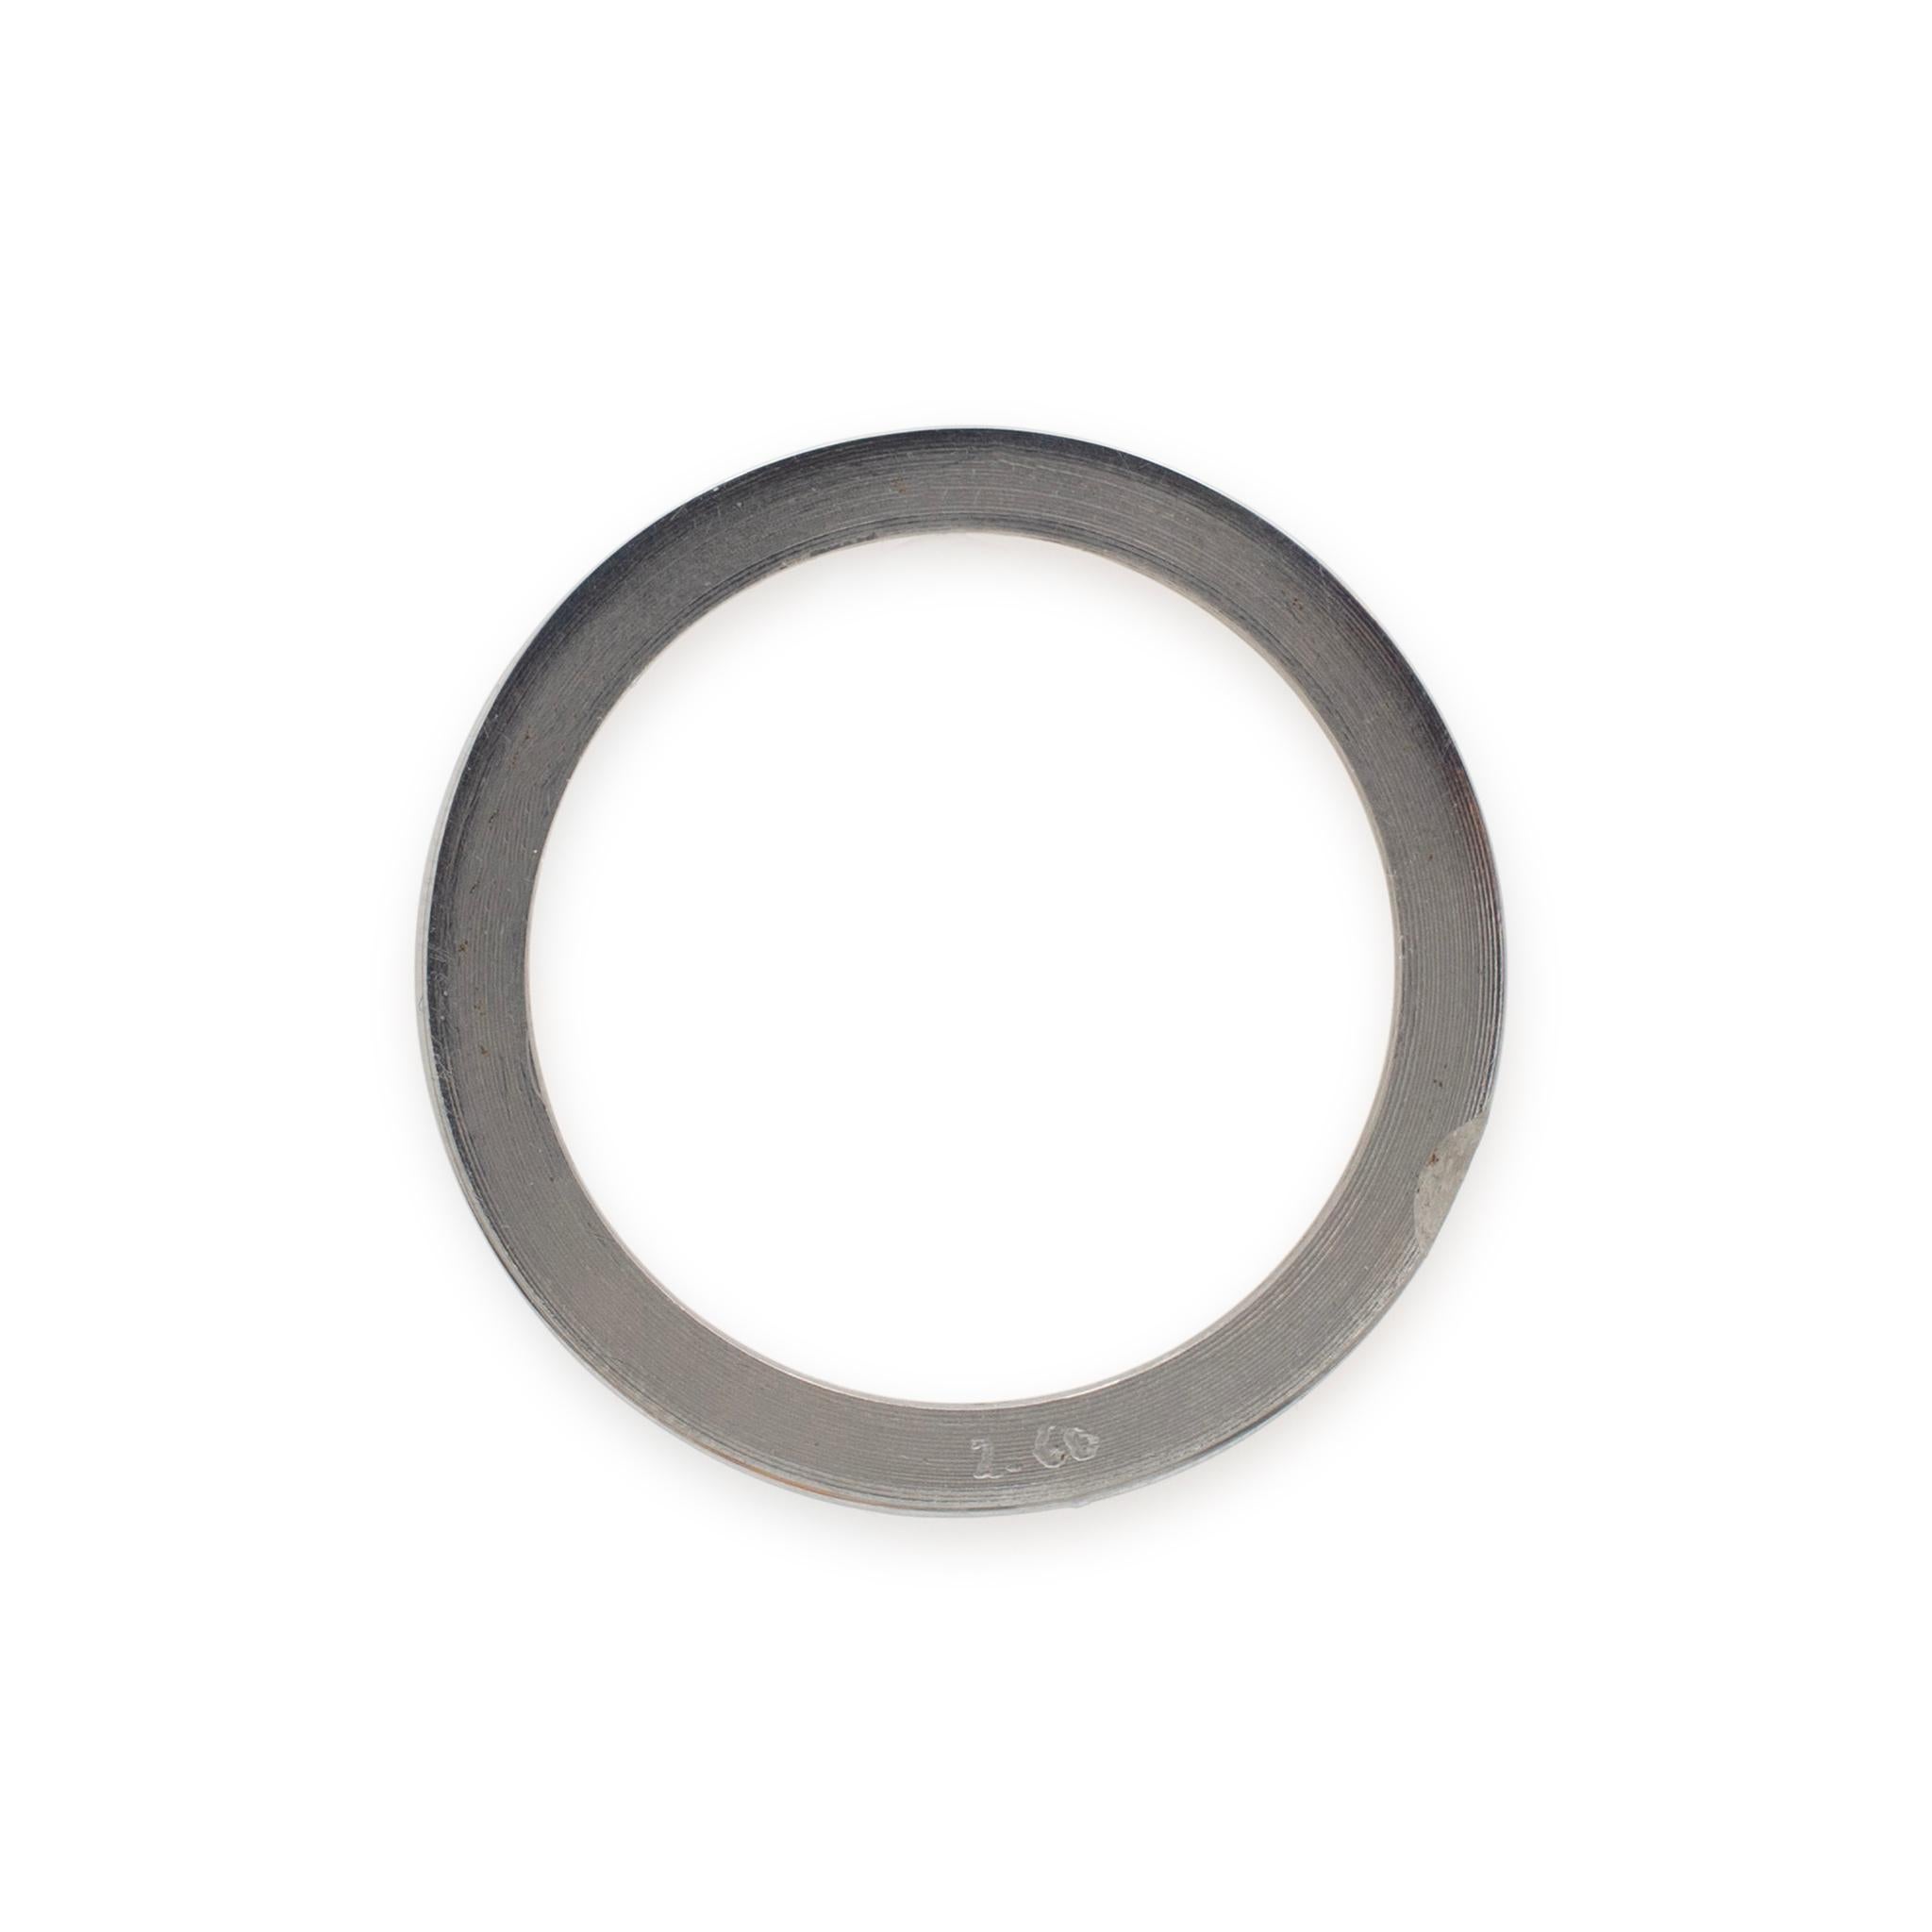 Metalltyp: Rostfreier Stahl

Außendurchmesser: 37,00 mm

Innendurchmesser: 31.00 mm

Gewicht: 5.70 Gramm

Rolex 36-mm-Diamantlünette aus Edelstahl. Graviert mit 